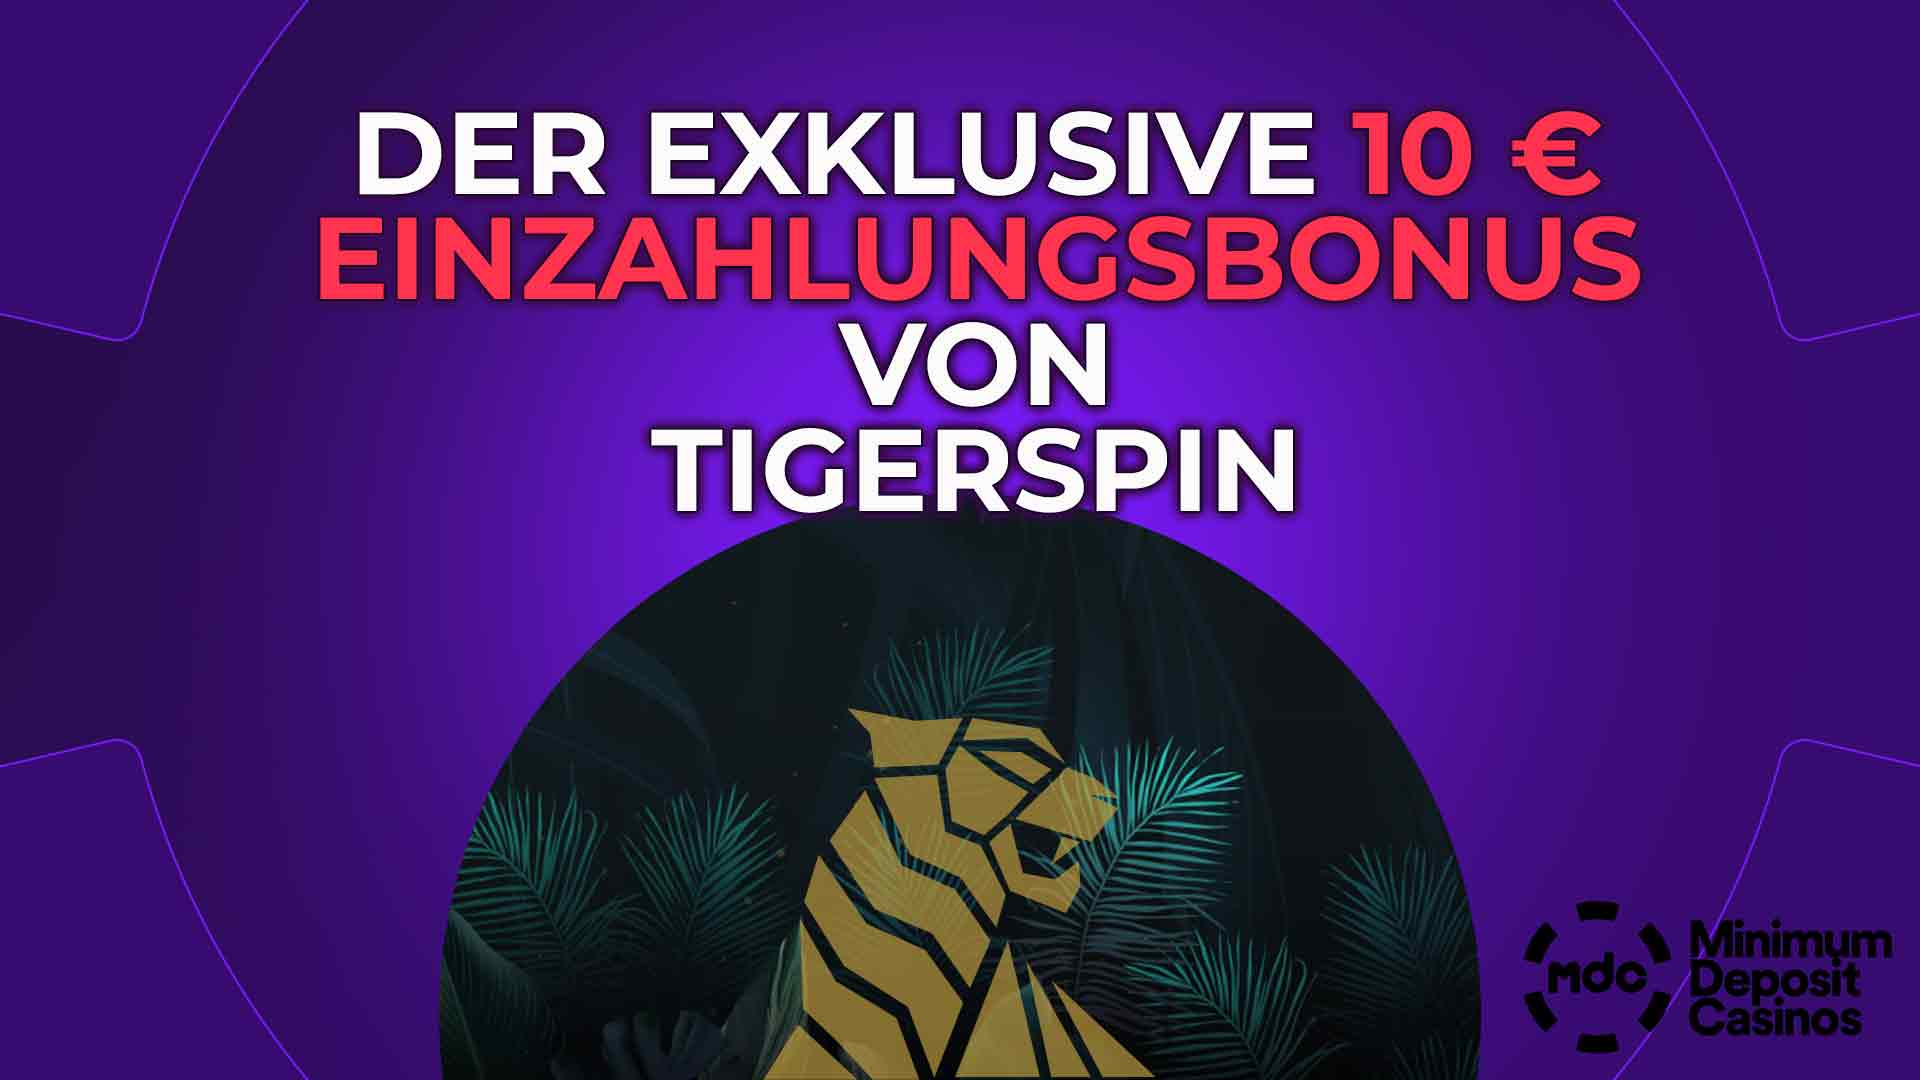 Der exklusive 10 € Einzahlungsbonus von TigerSpin